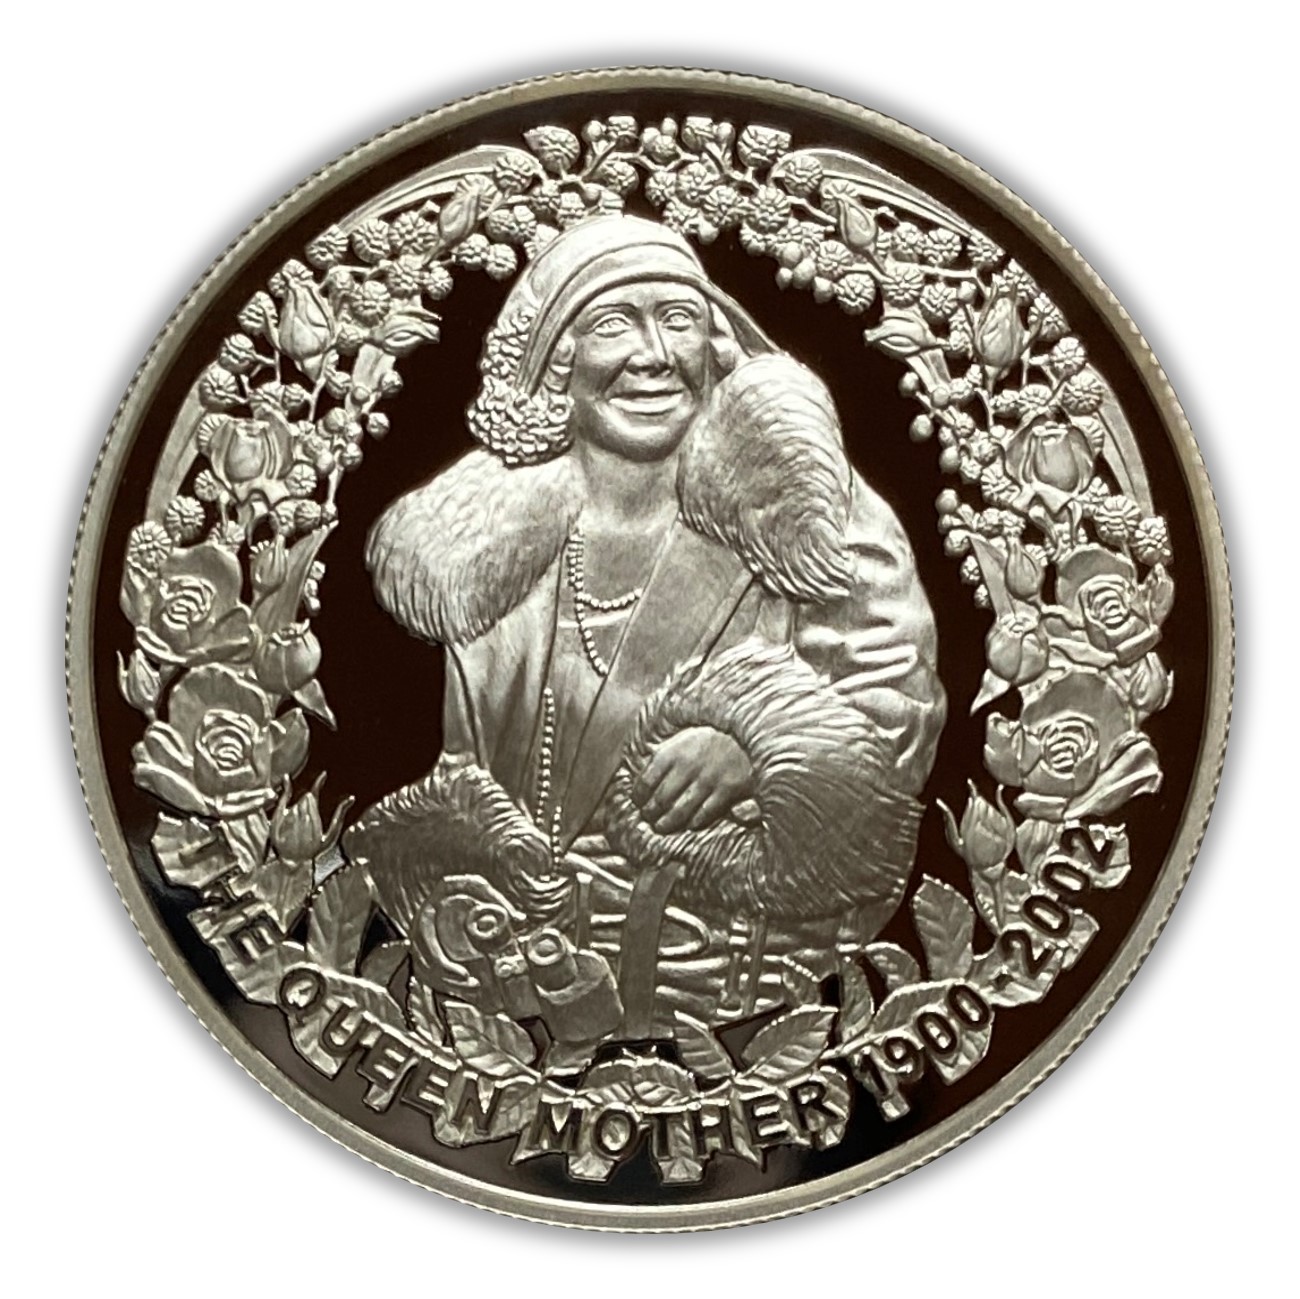 2002 The Queen Mother 1 oz Silver Coin